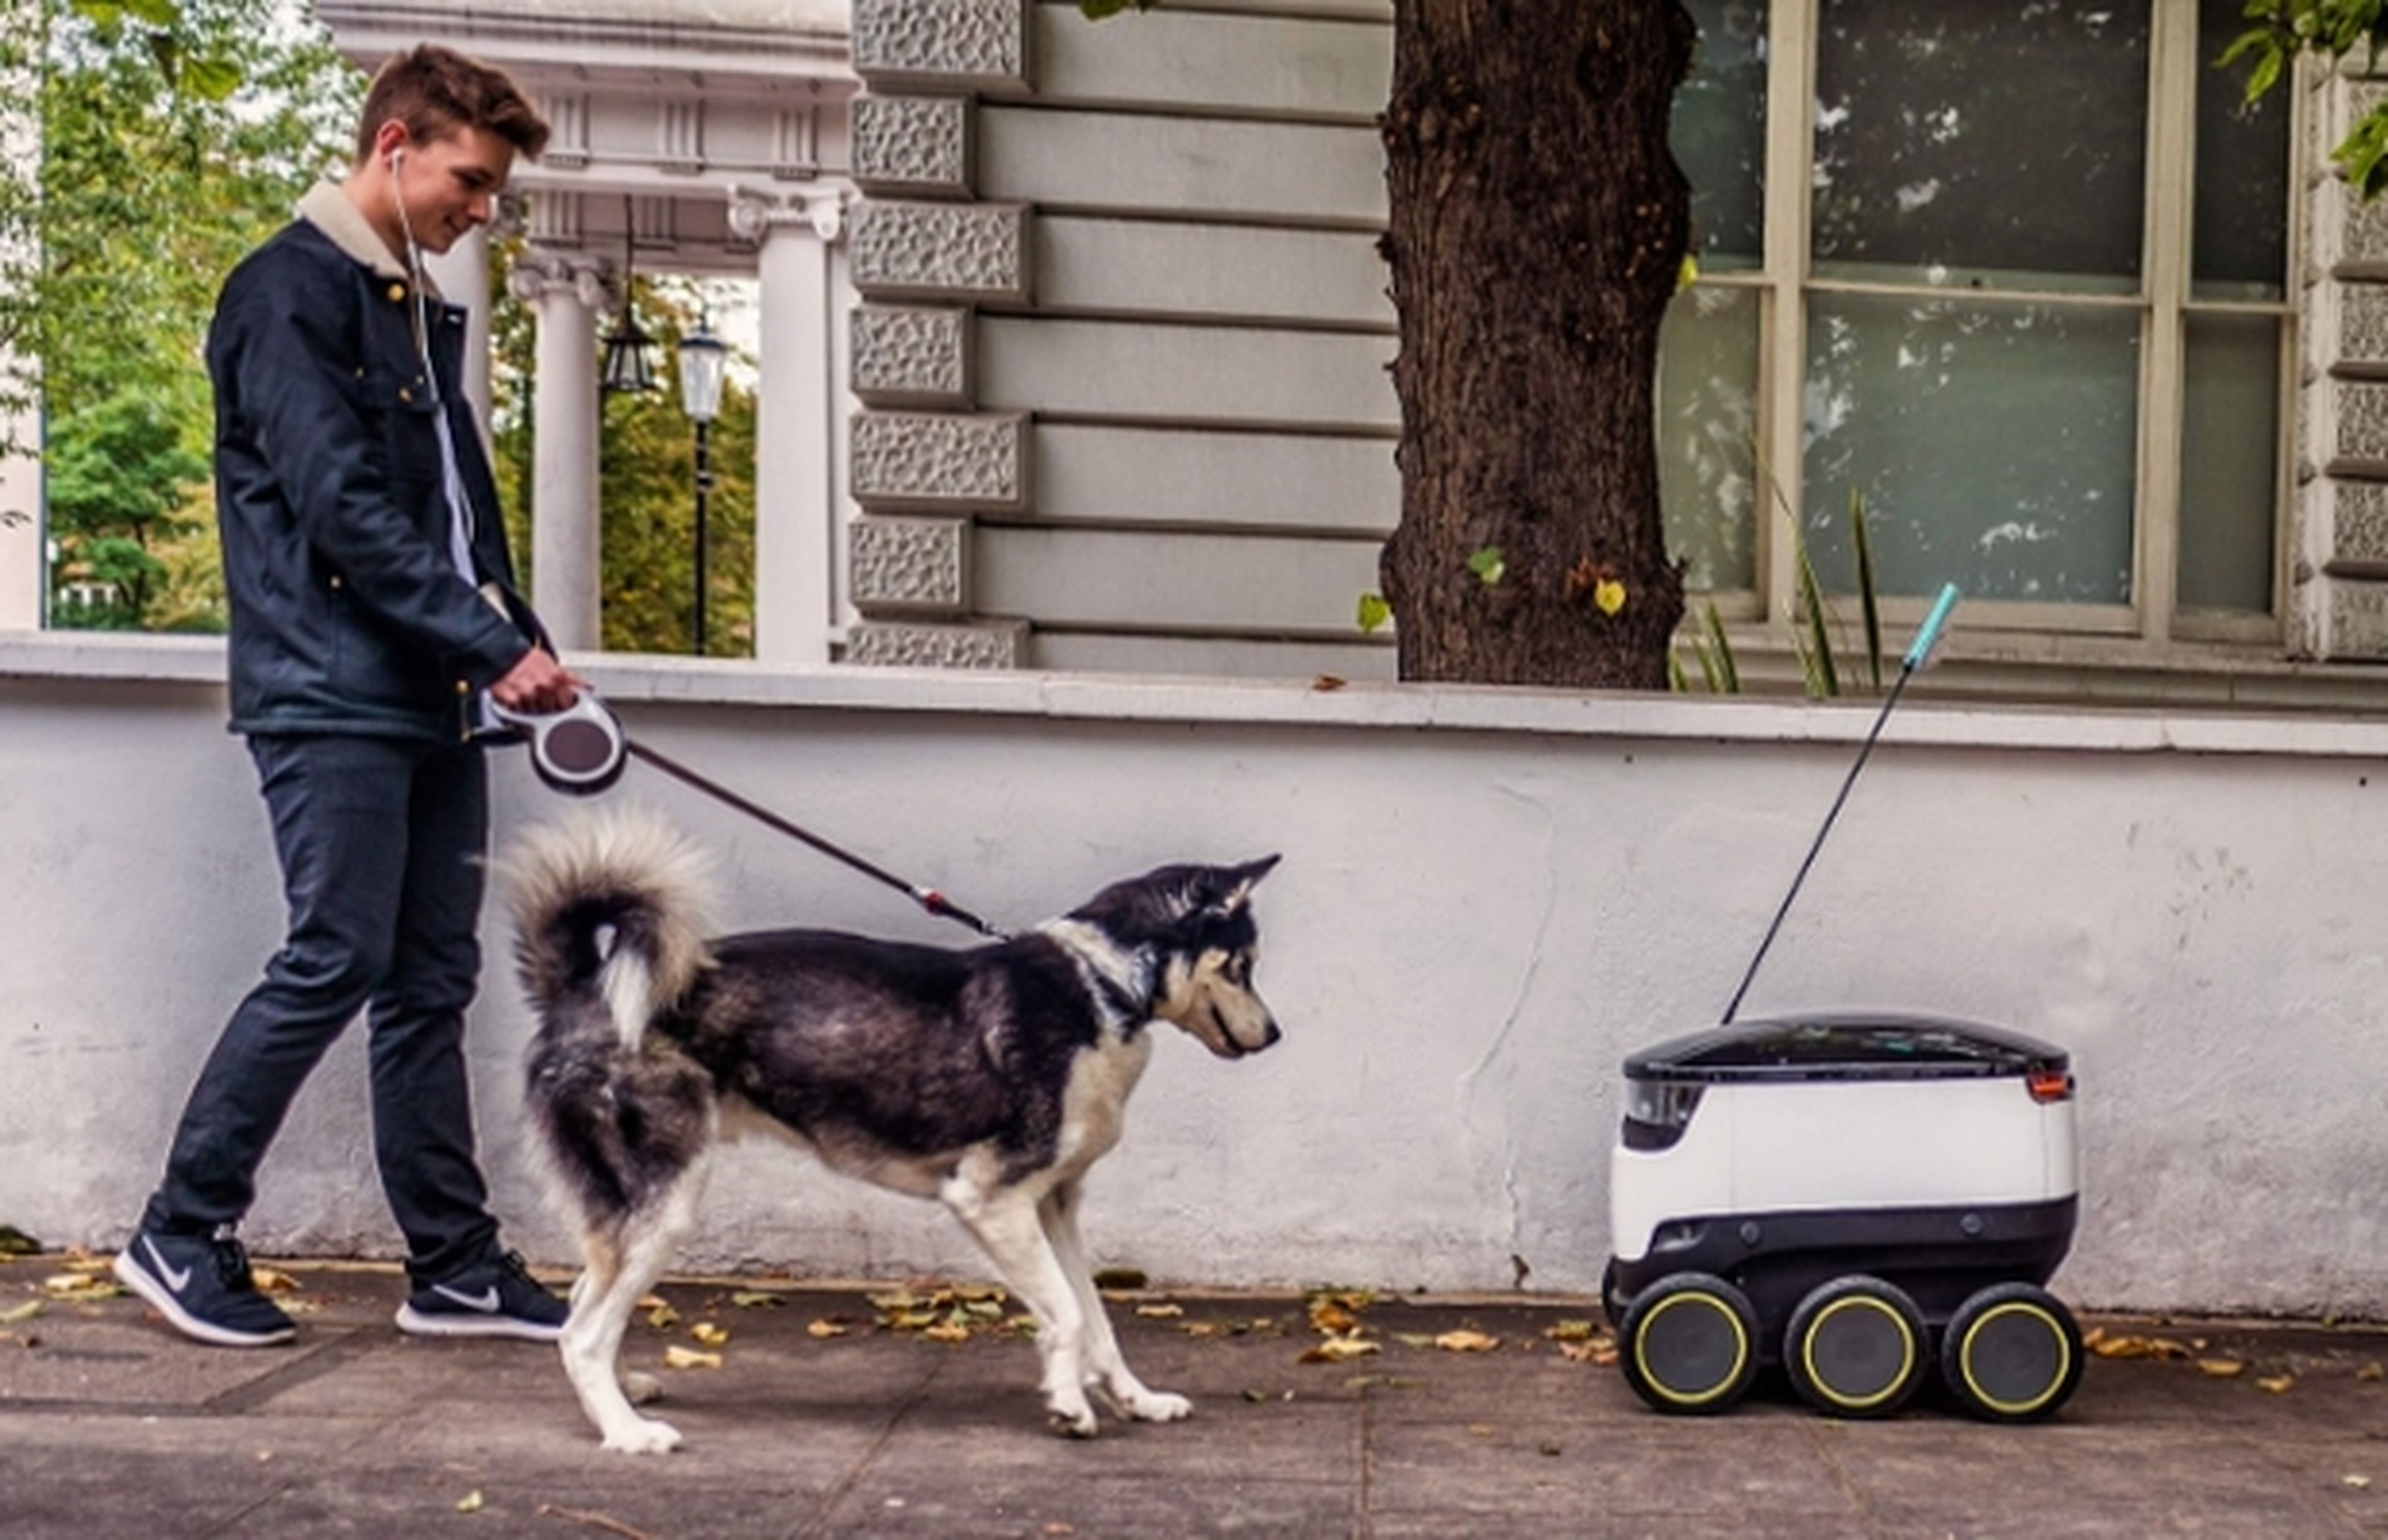 Olvida los drones, tus pedidos te los traerá un robot autónomos sobre ruedas